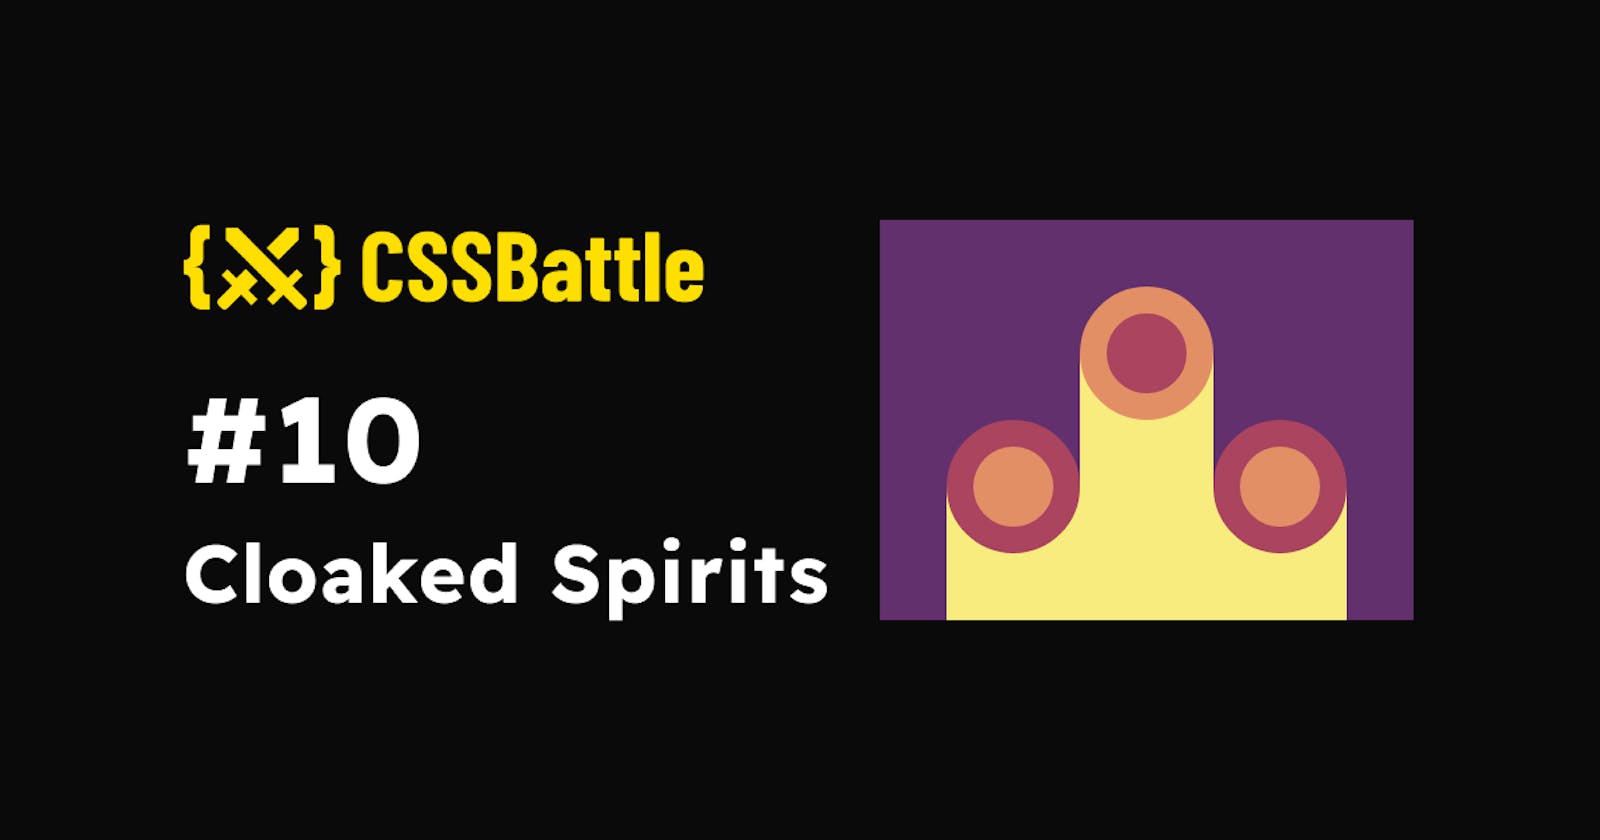 CSS Battle: #10 - Cloaked Spirits